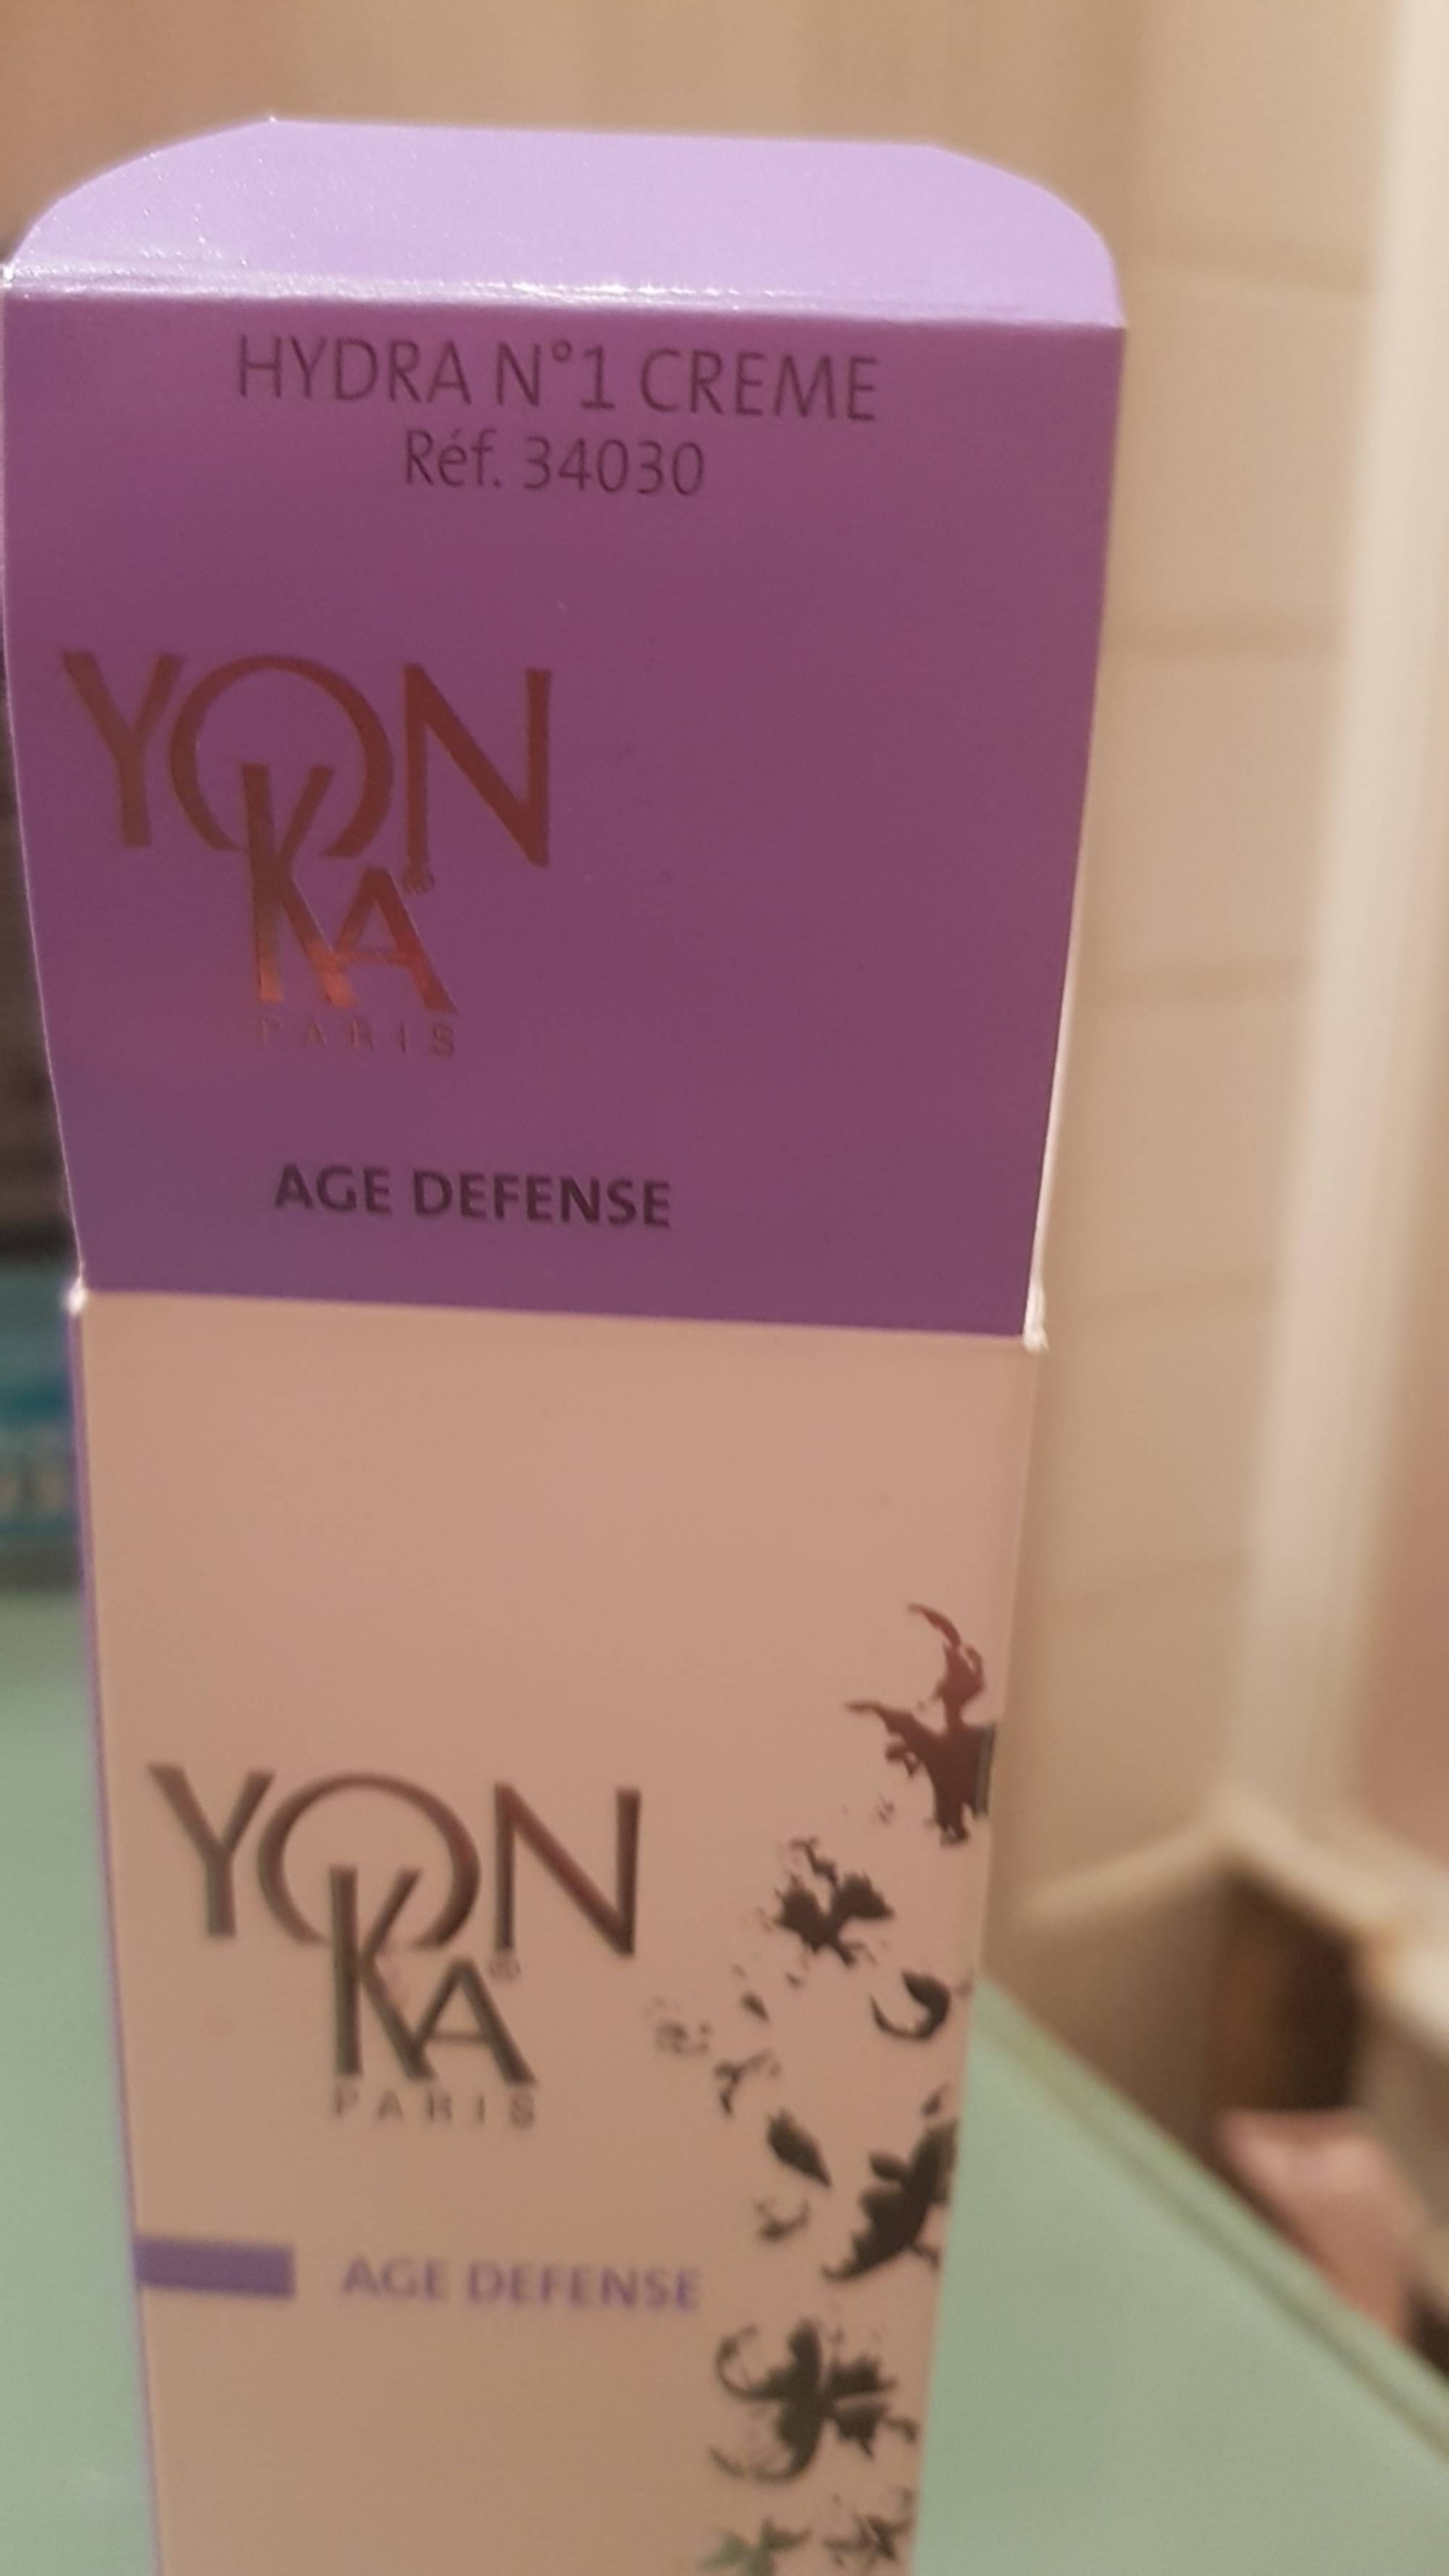 YONKA - Hydra N°1 Crème - Age defense